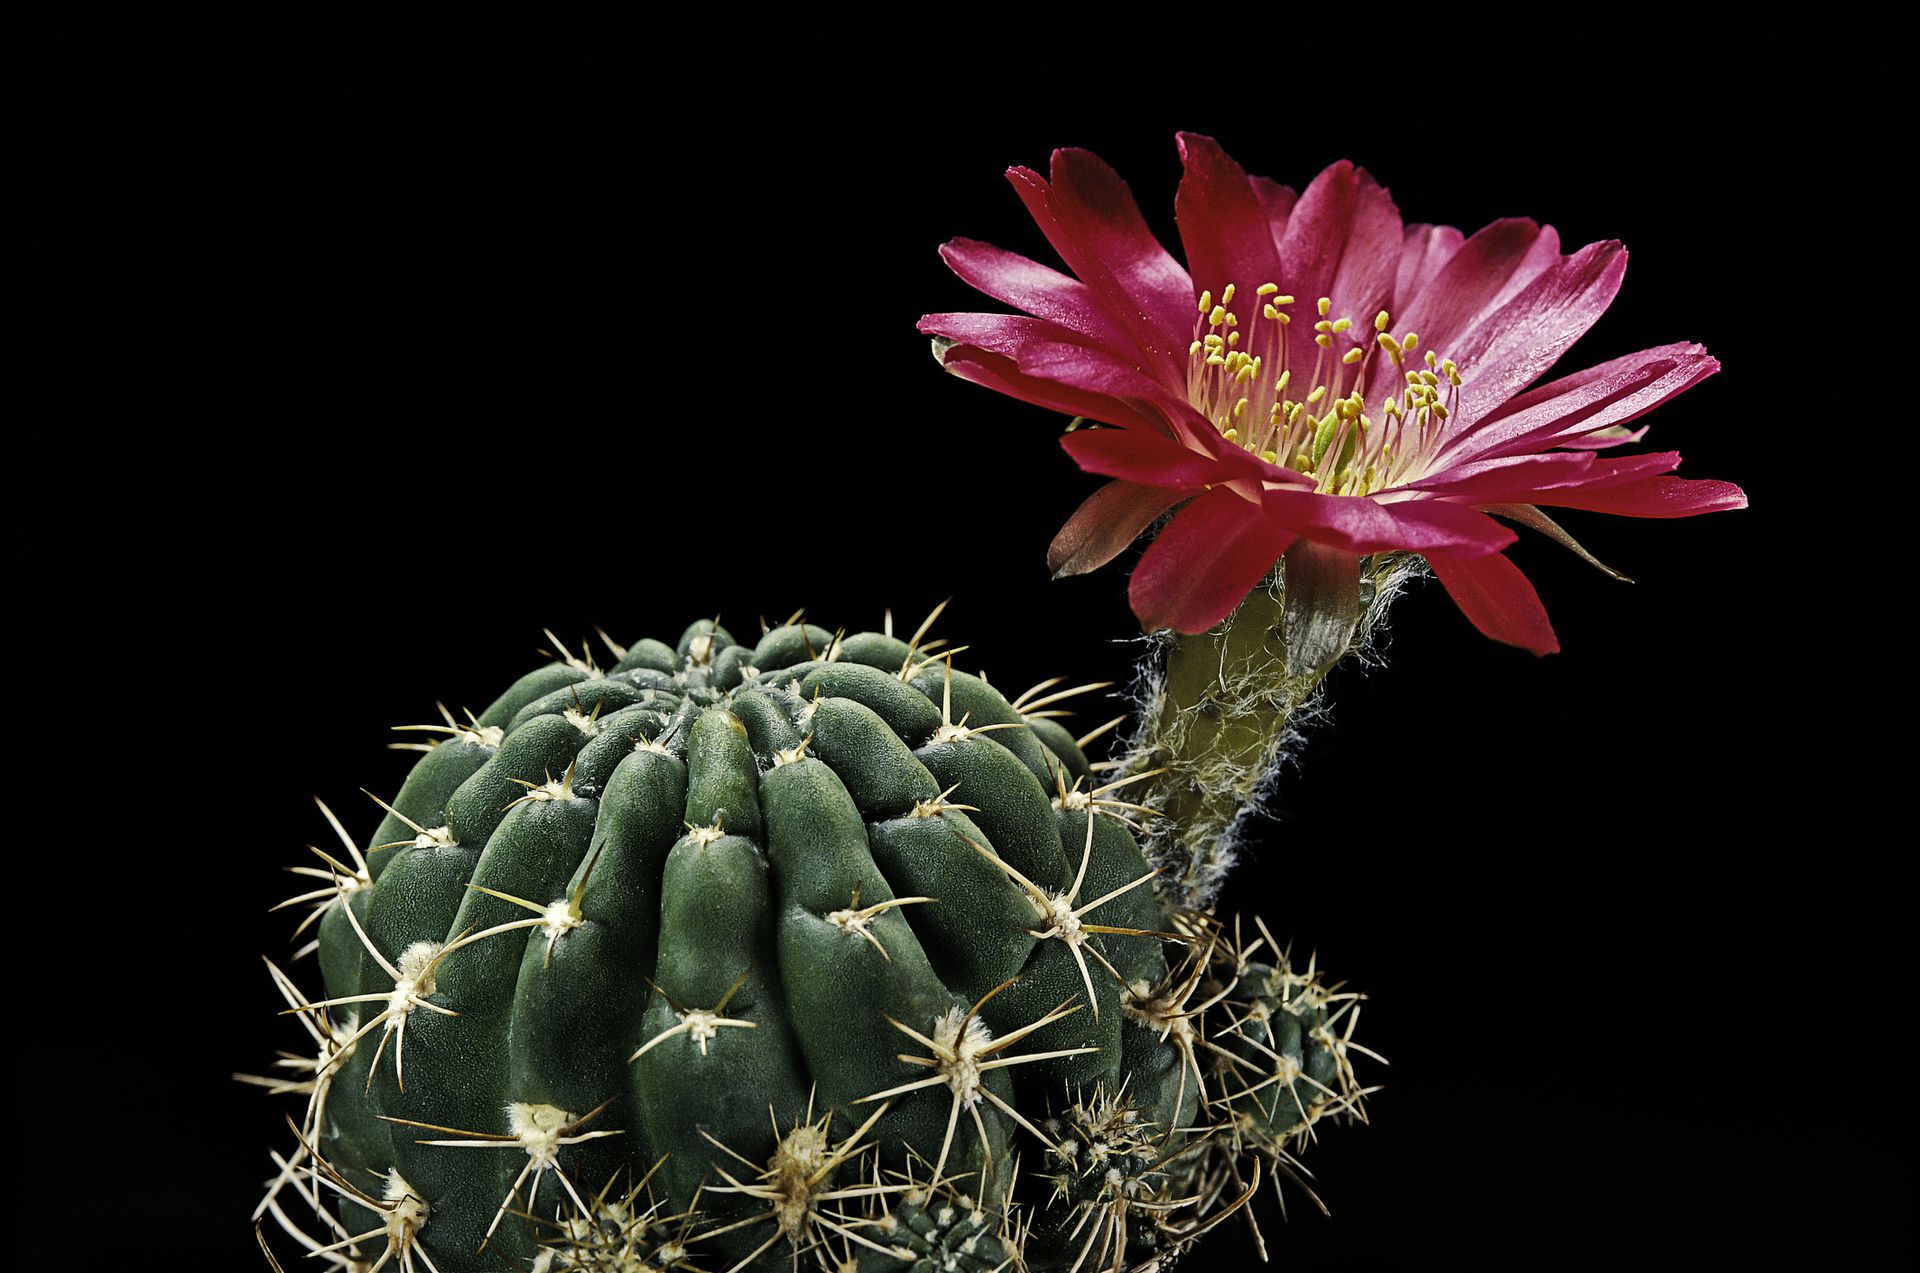 El enigmático significado espiritual detrás del florecimiento de un cactus